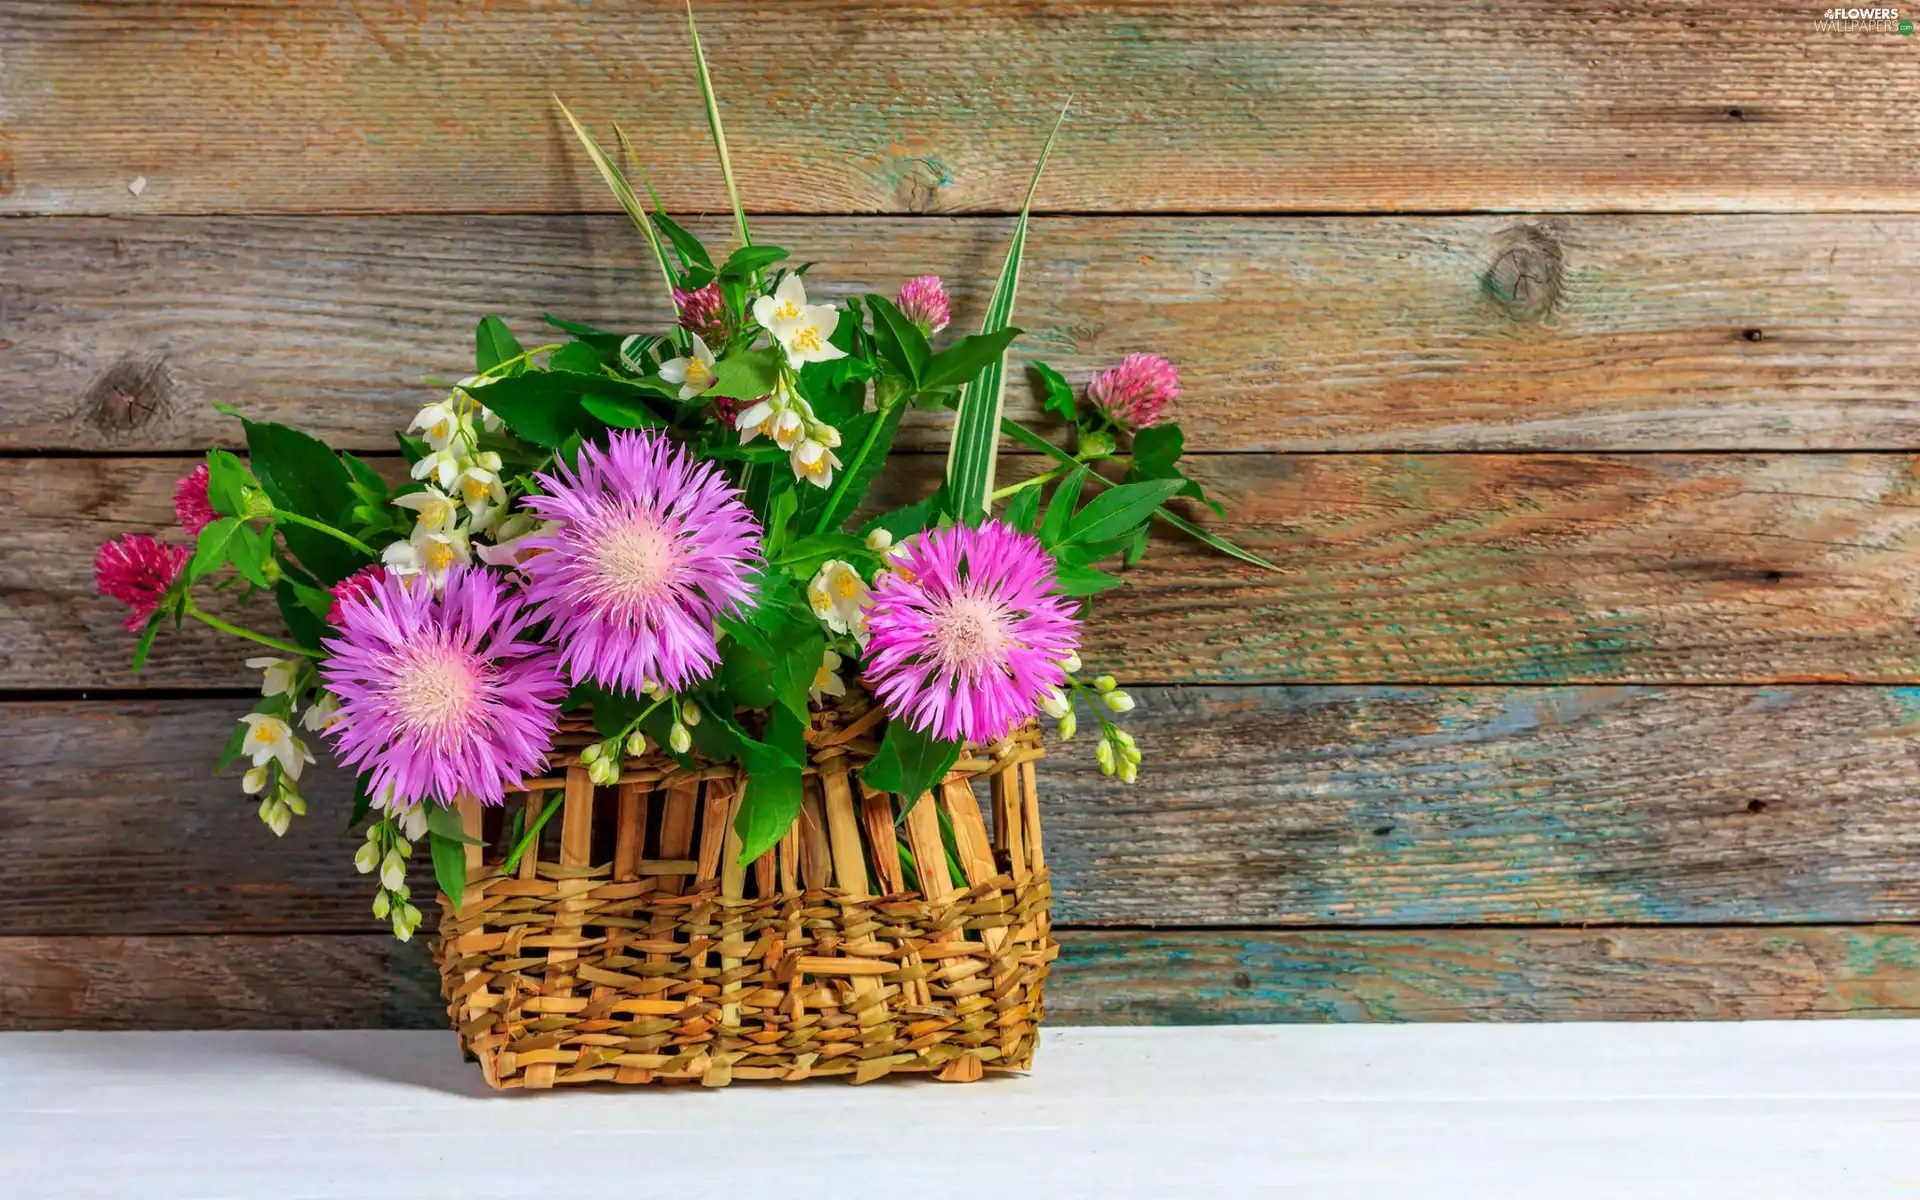 cornflowers, trefoil, basket, board, bouquet, Mock Orange